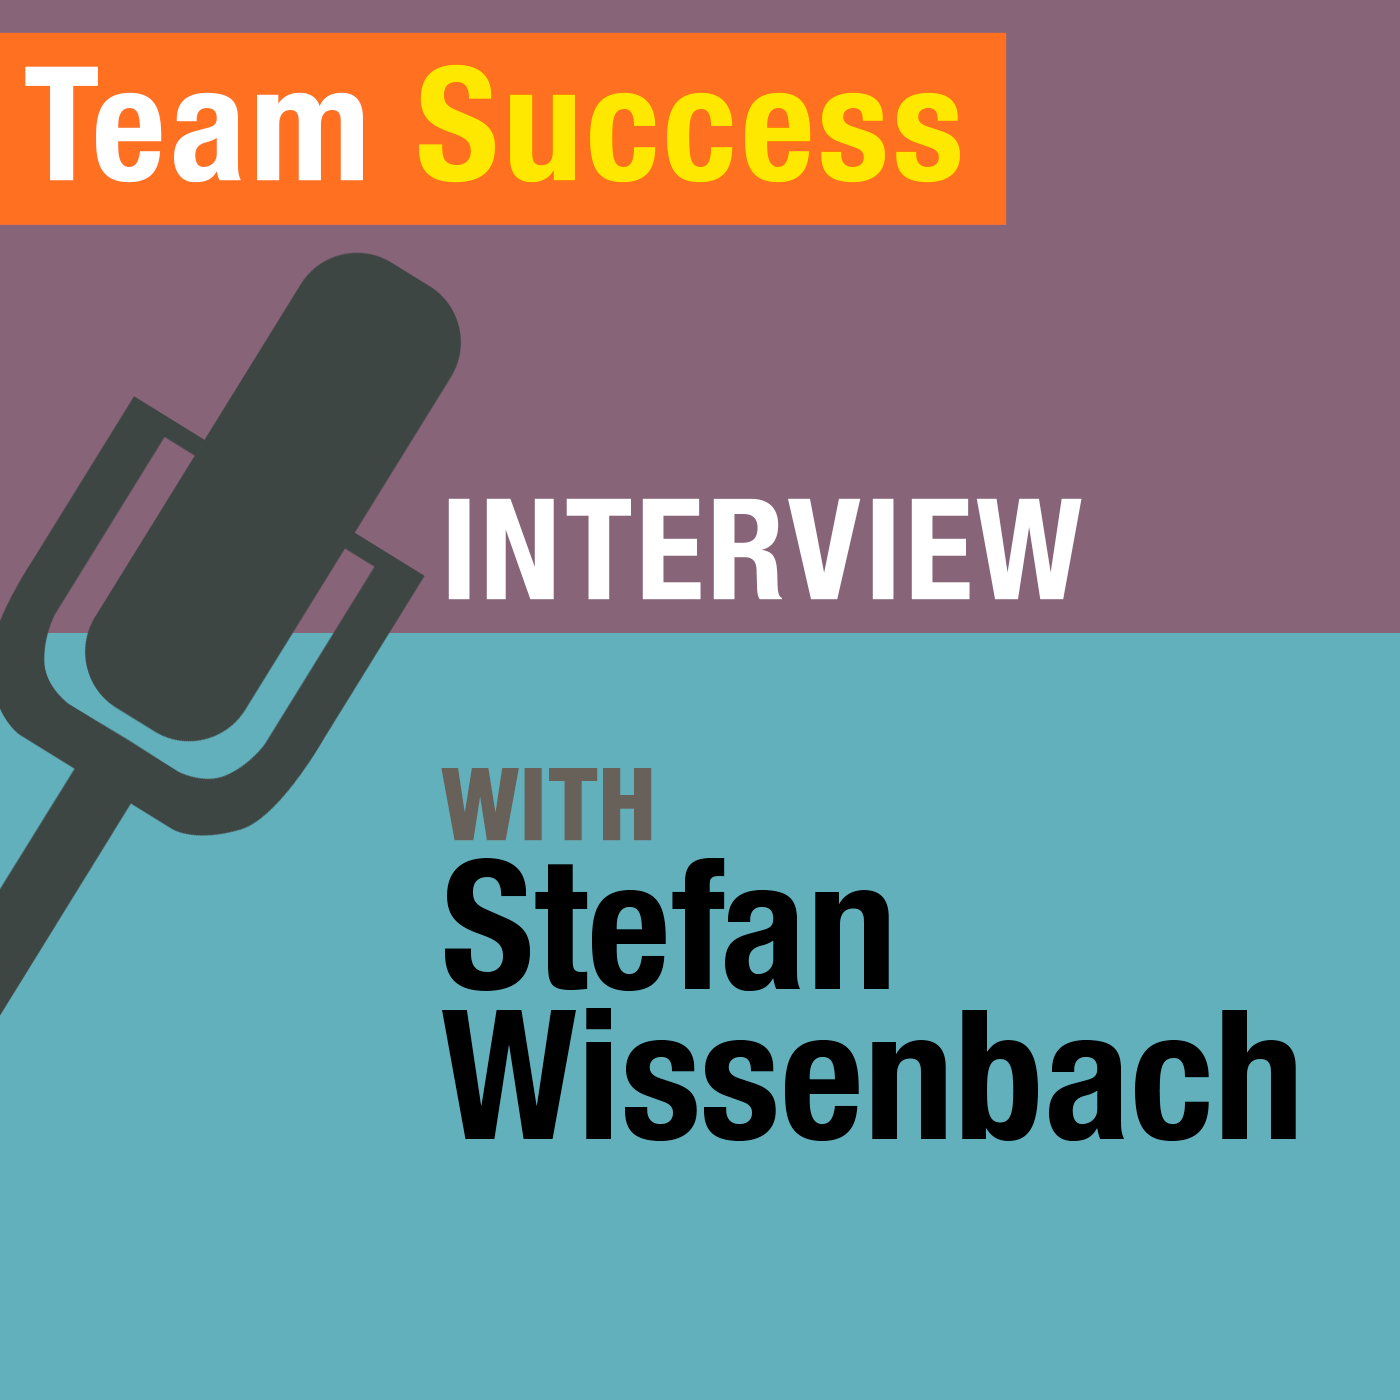 An Interview With Stefan Wissenbach - Team Success Podcast